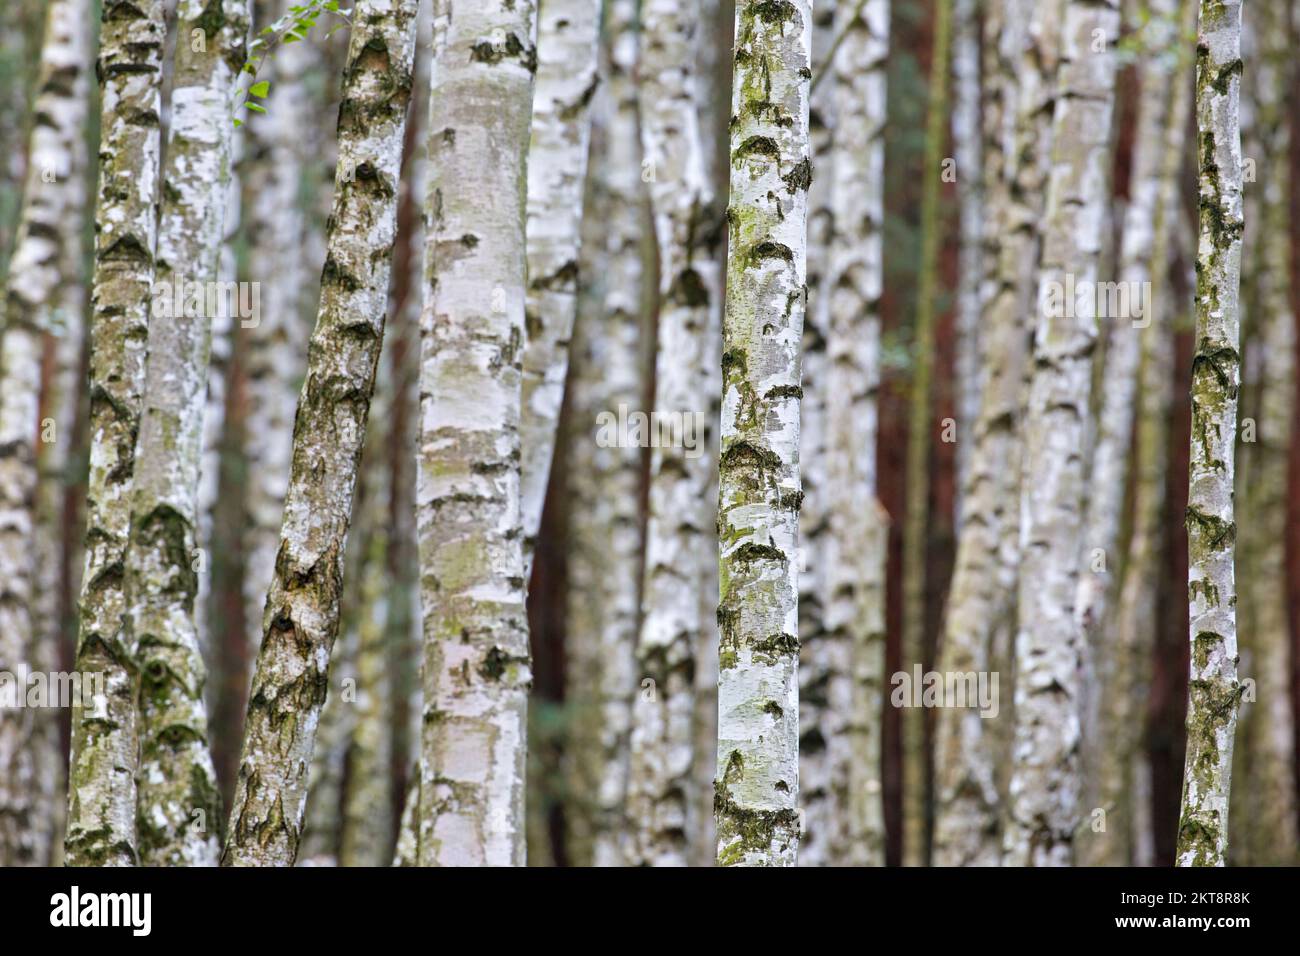 Bouleau argenté / bouleau verruque / bouleau blanc européen (Betula pendula / Betula verrucosa) troncs d'arbres de bouleau dans la forêt décidue en automne Banque D'Images